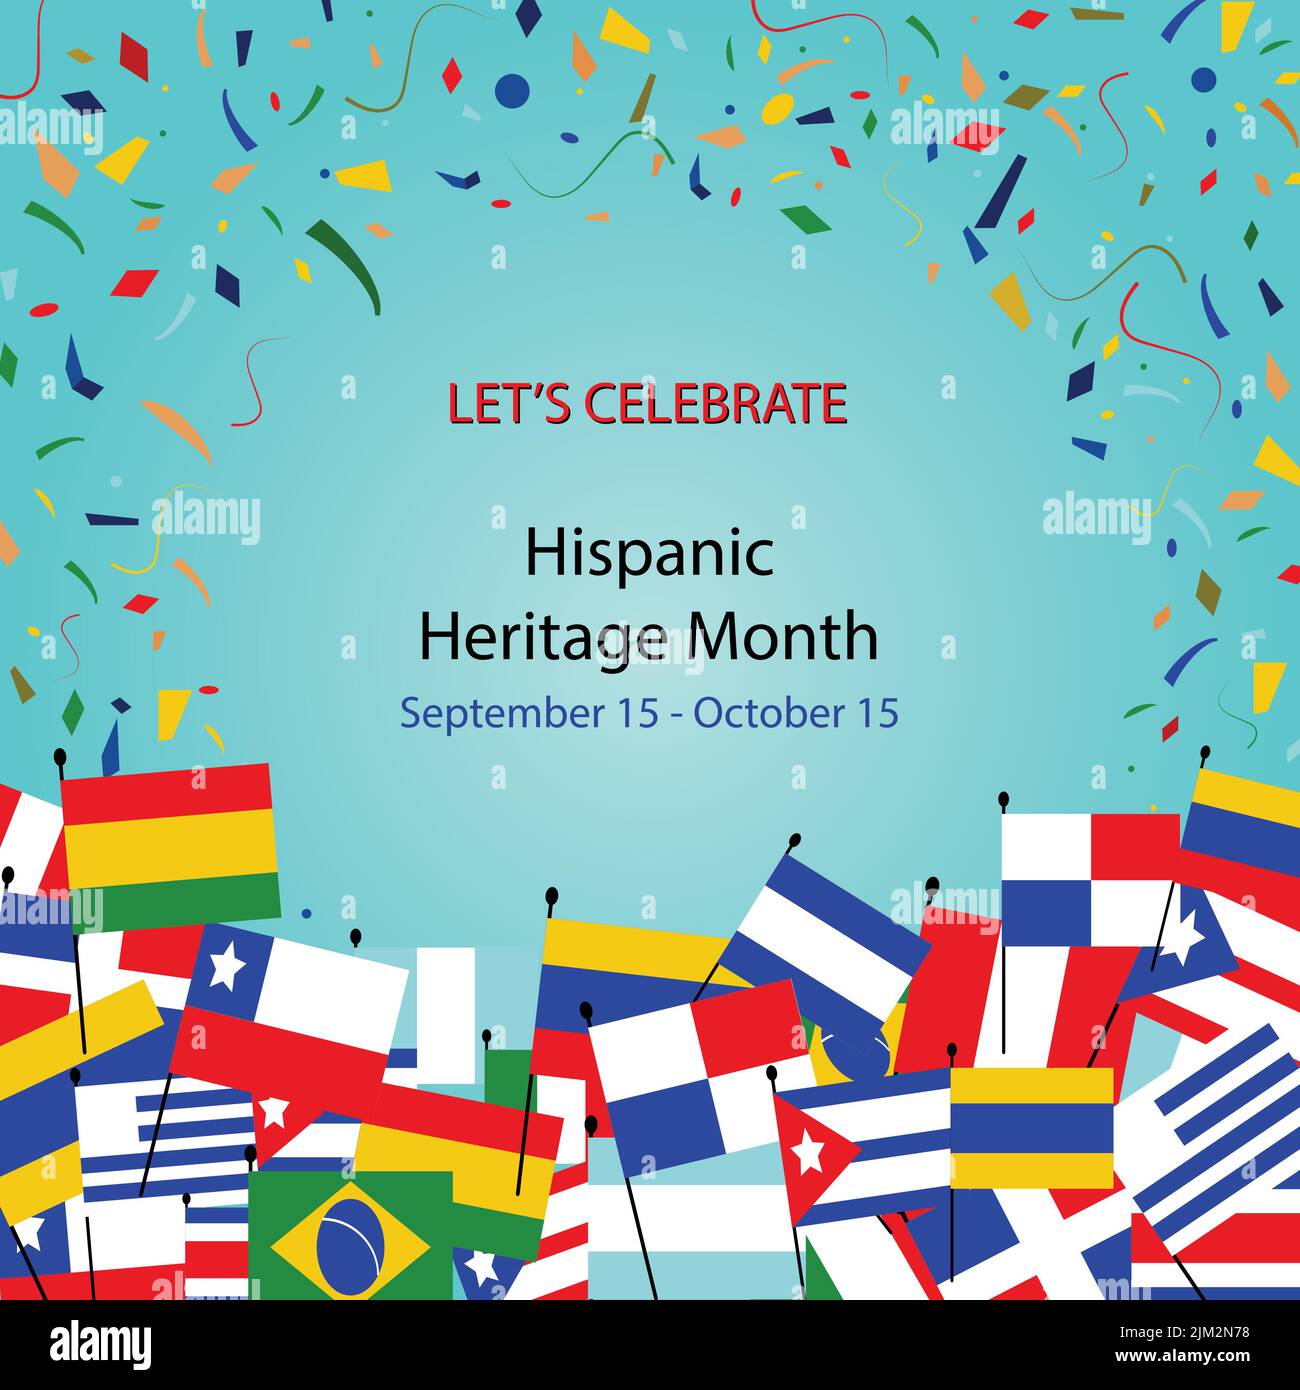 Nationaler Monat Des Hispanischen Erbes. Gruppe von Händen mit verschiedenen Farben und Flaggen von Amerika. Kulturelle und ethnische Vielfalt. Stock Vektor